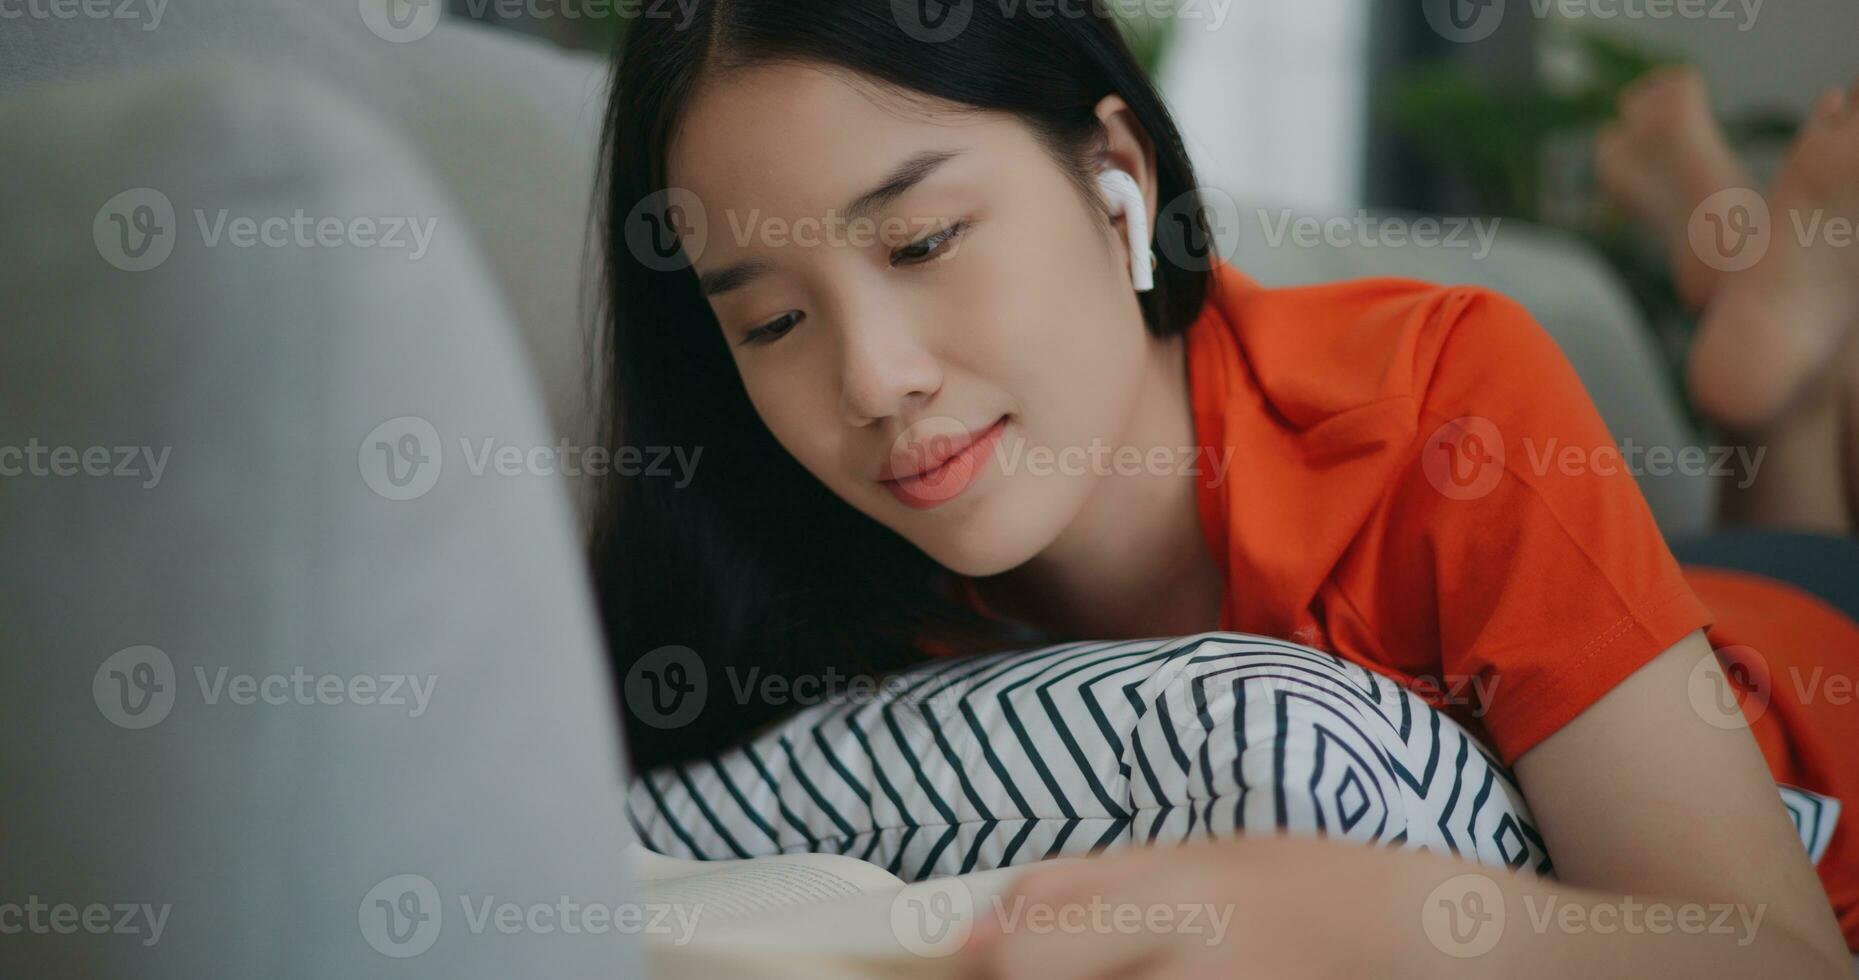 asiatisch Frau lesen ein Buch während Lügen auf das Sofa foto